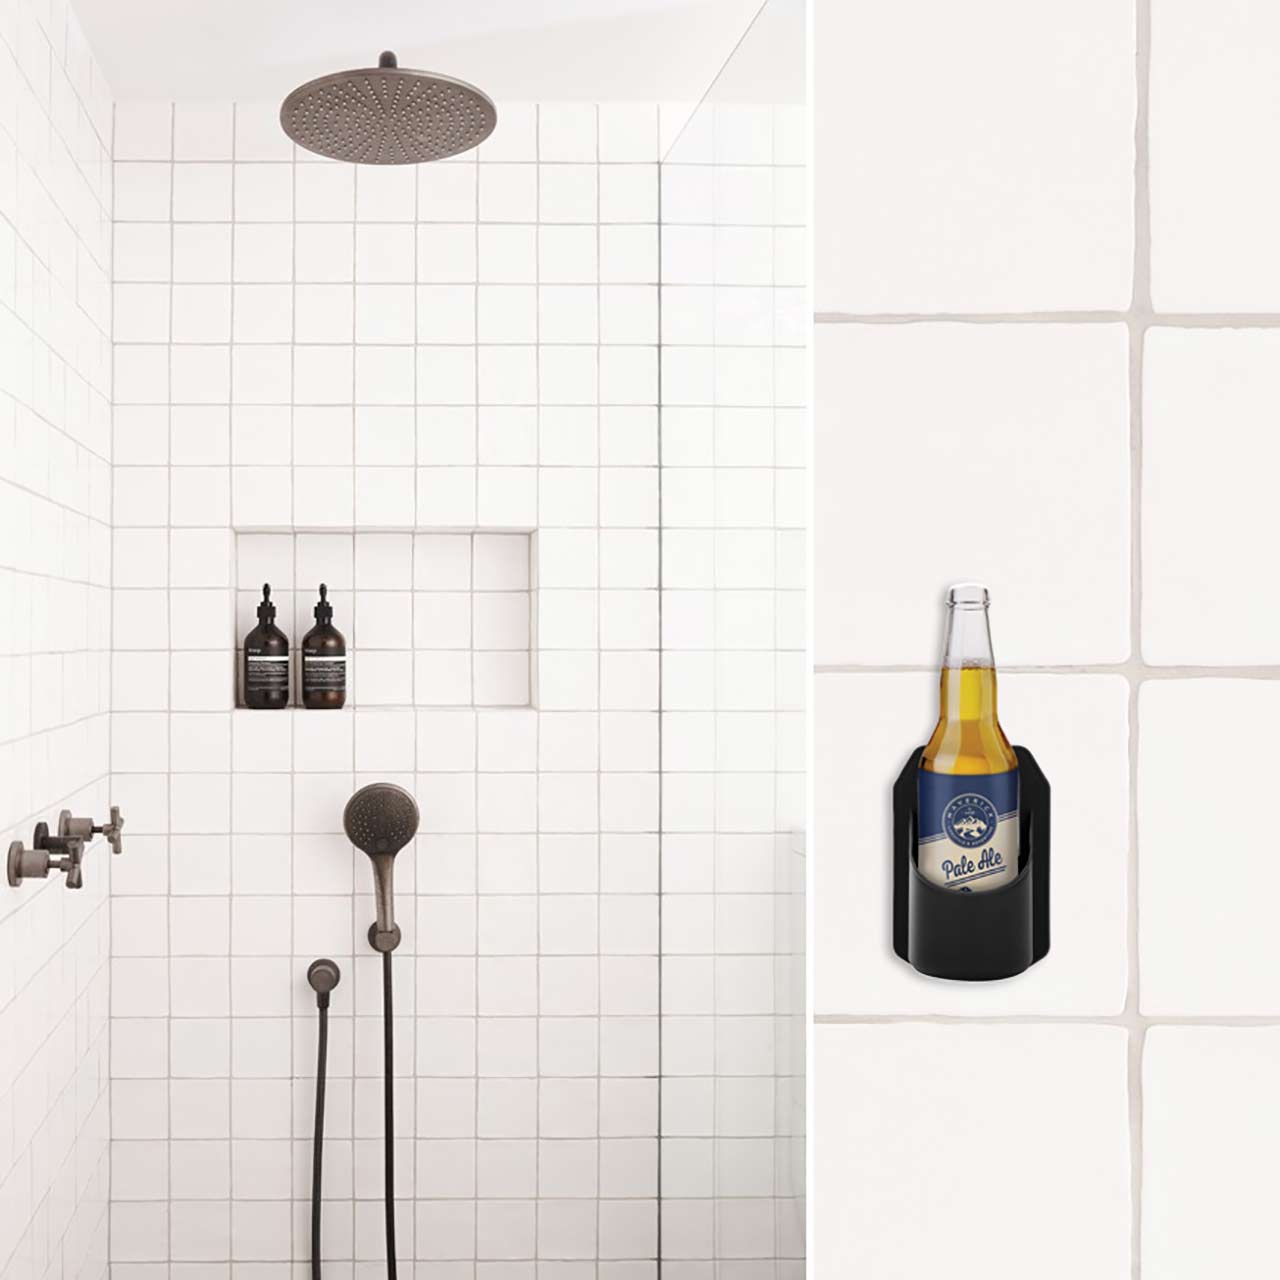 Maverick Bathroom Bevvy Holder with beer bottle on bathroom wall | the design gift shop